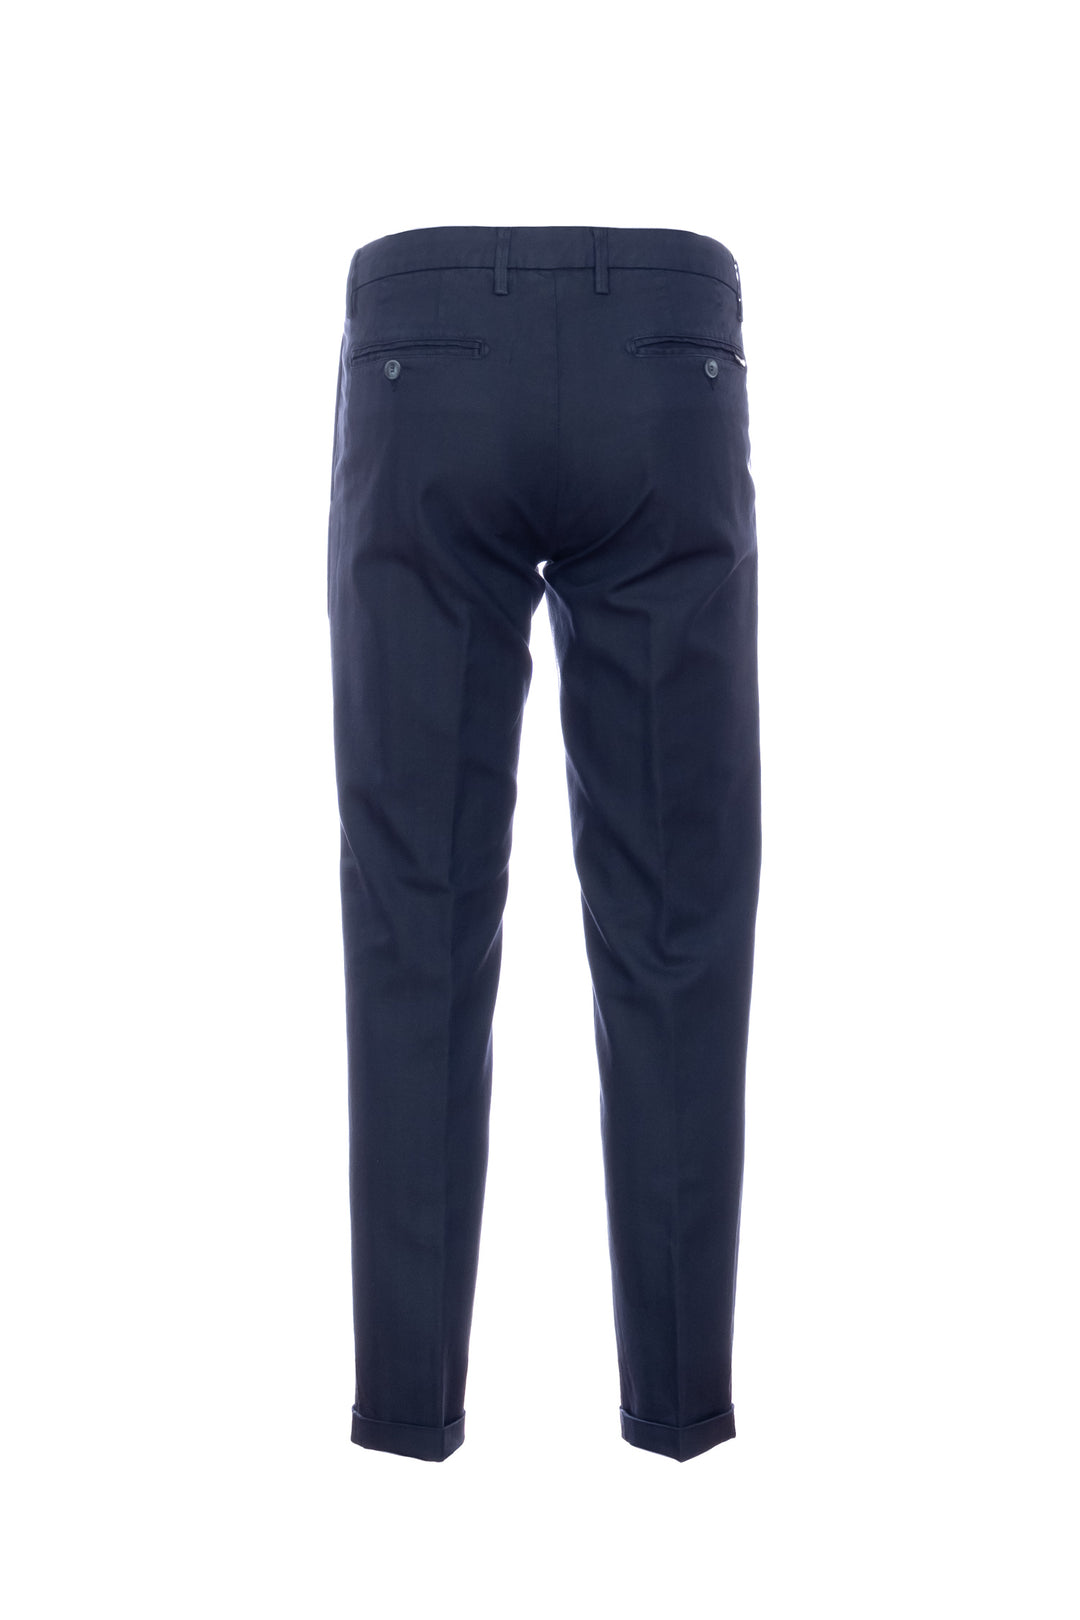 RE-HASH Pantalone chinos “MUCHA-P1C” blu a righe in cotone e lino con risvolto - Mancinelli 1954